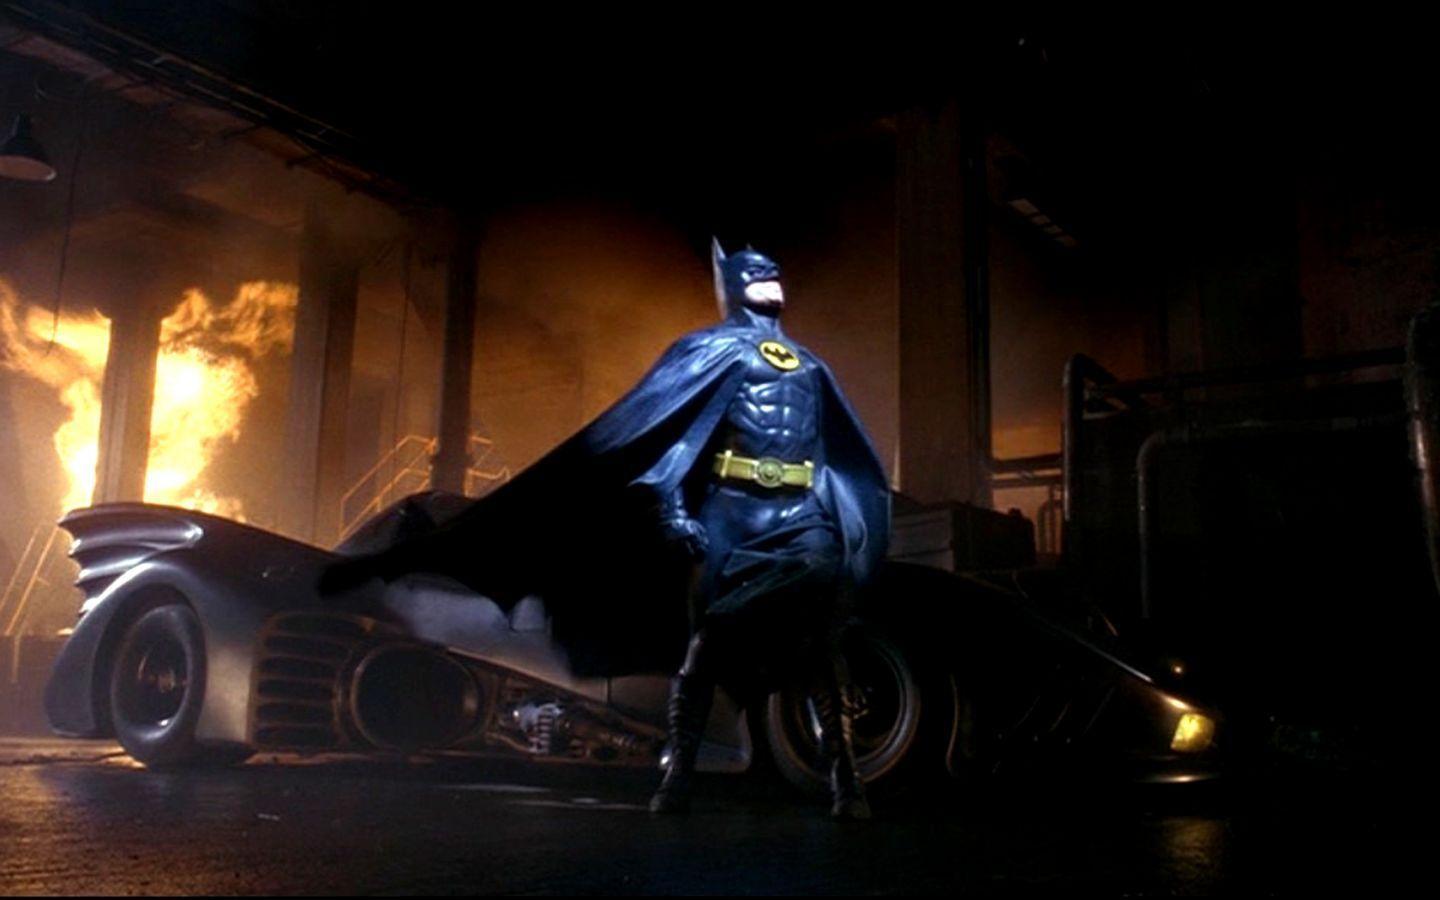 Download Batman Batmobile Portrait Wallpaper 1440x900. HD